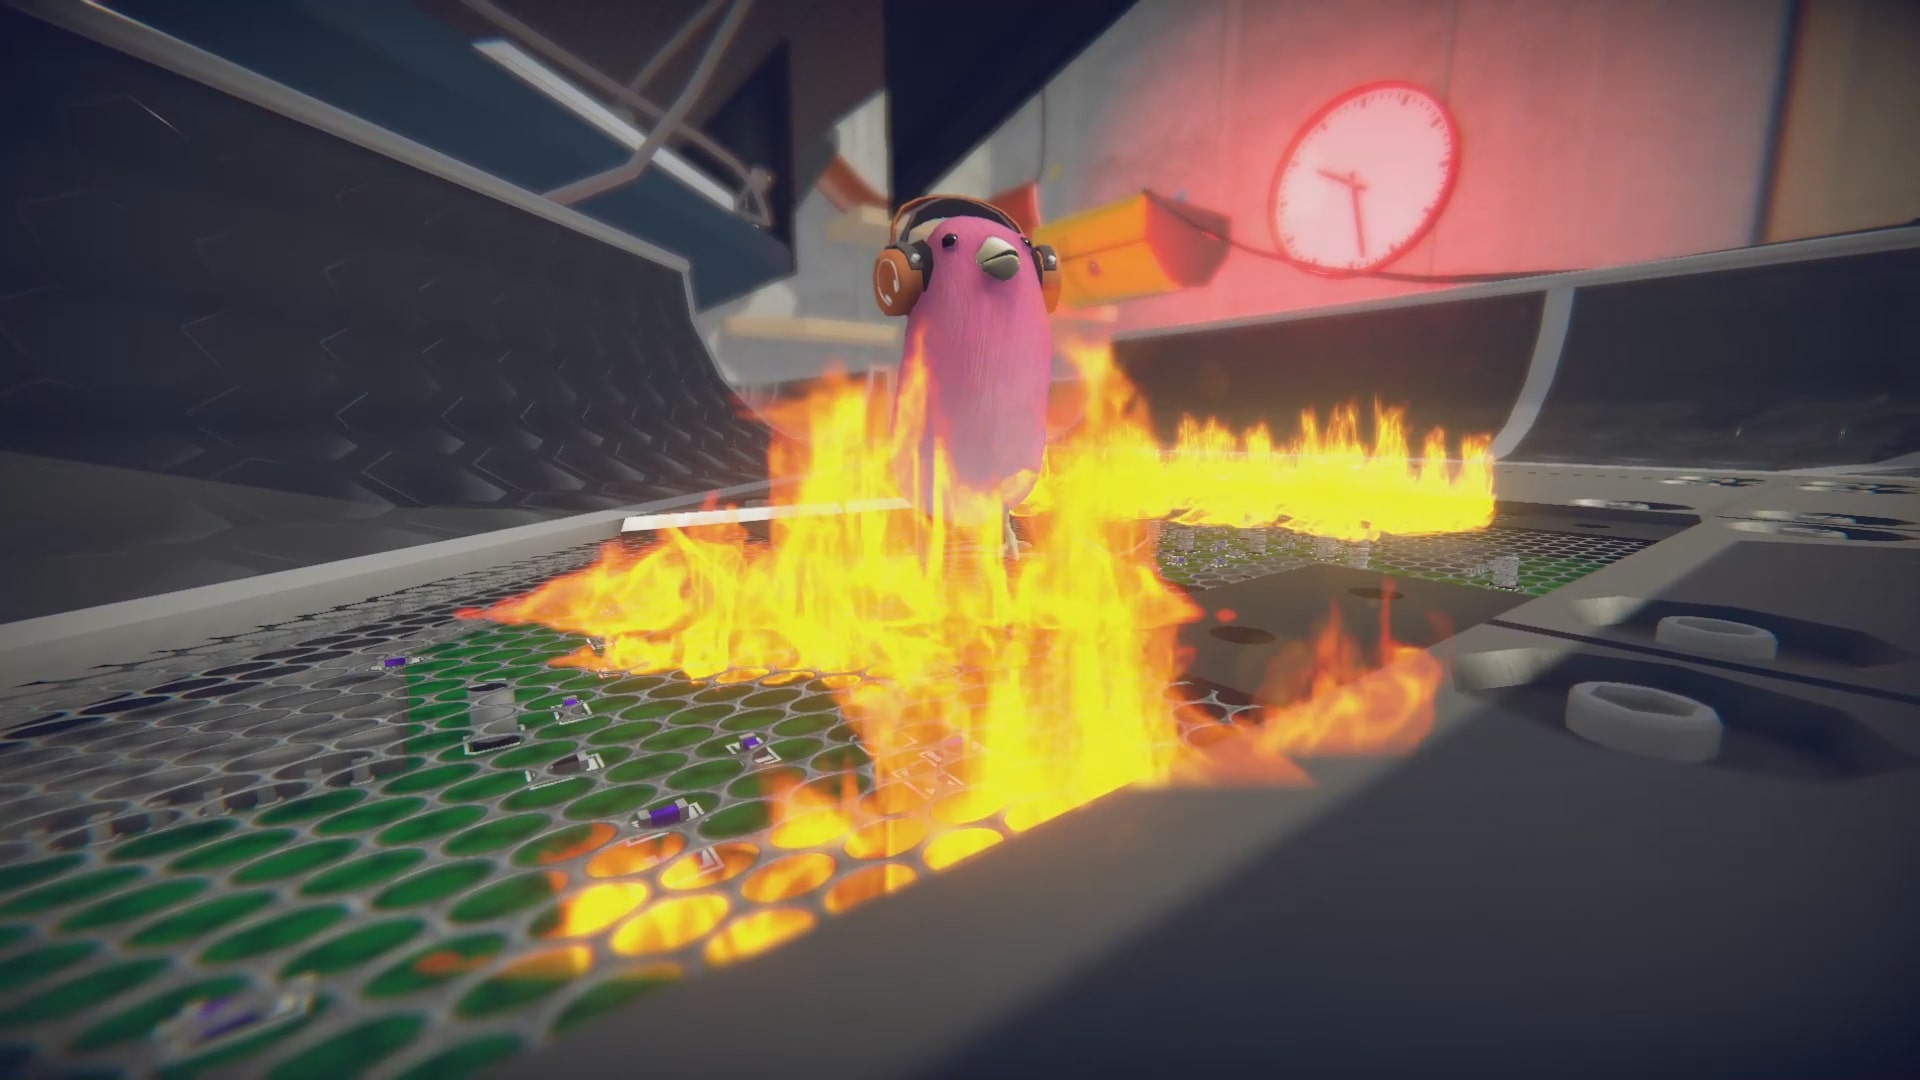 SkateBIRD (Xbox One) - The Game Hoard